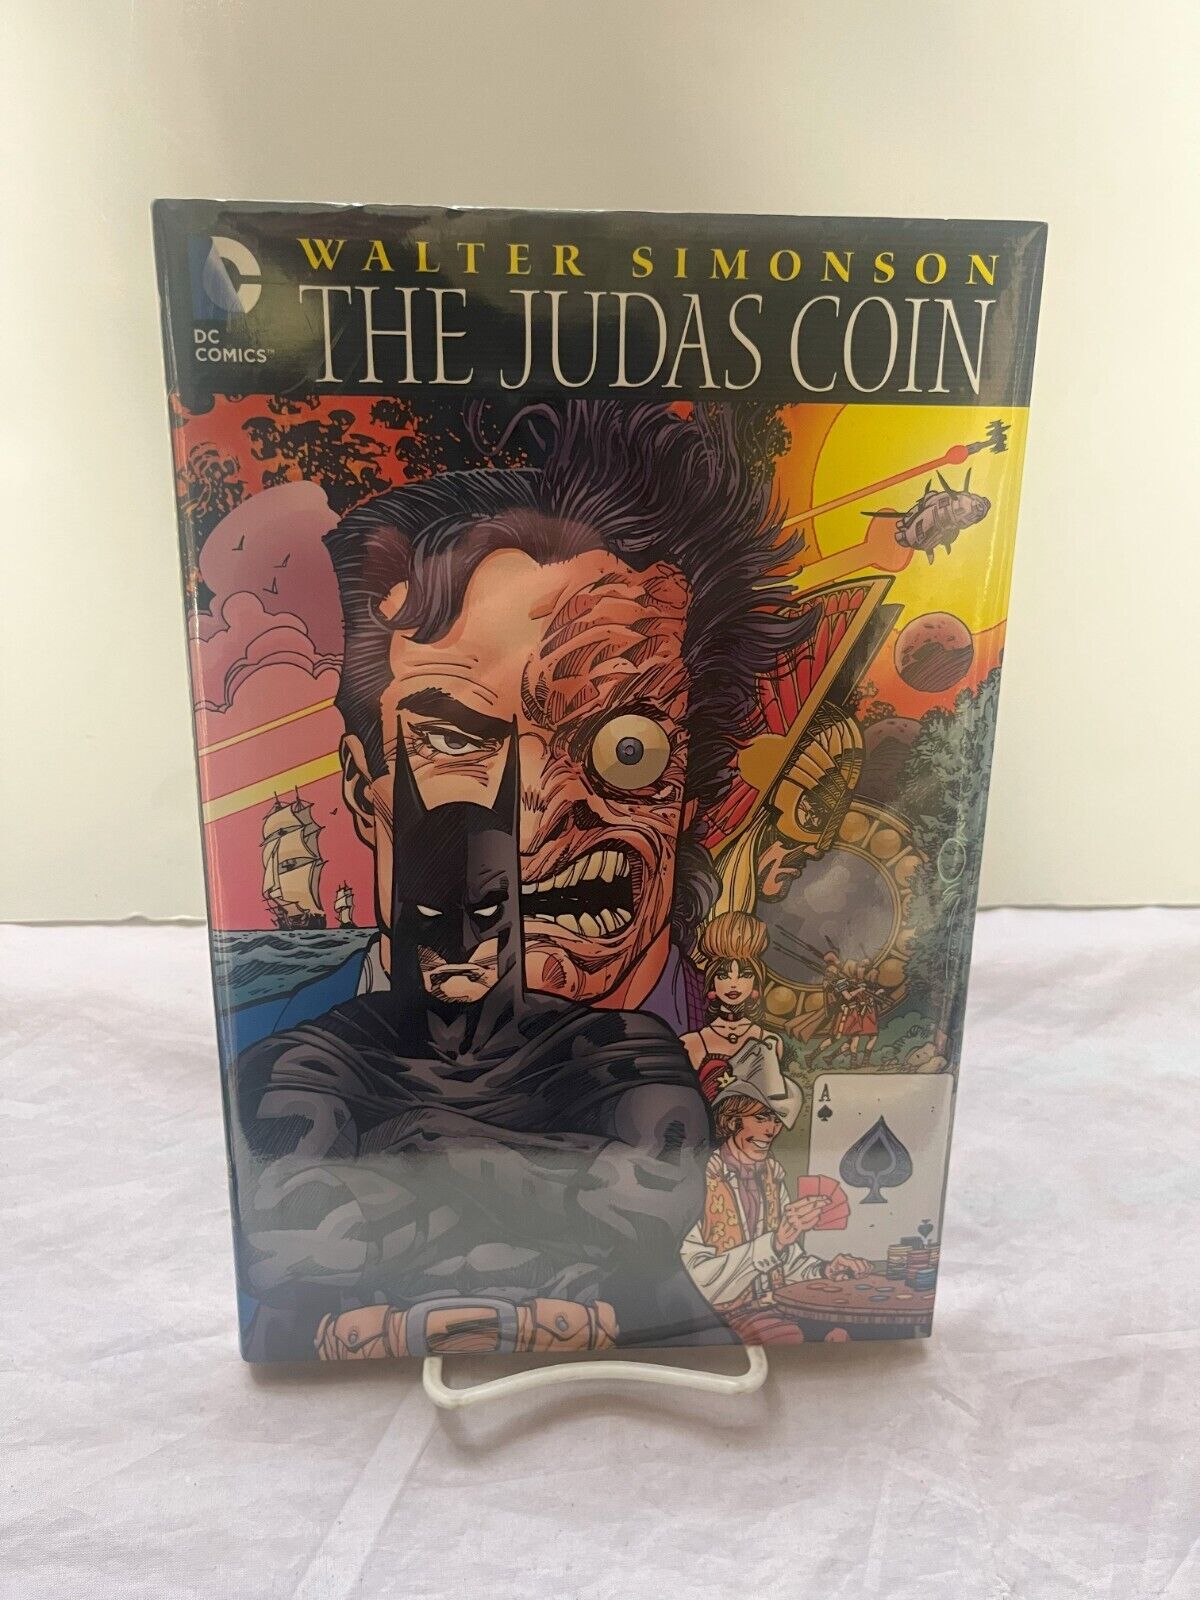 The Judas Coin: Walter Simonson DC Comics